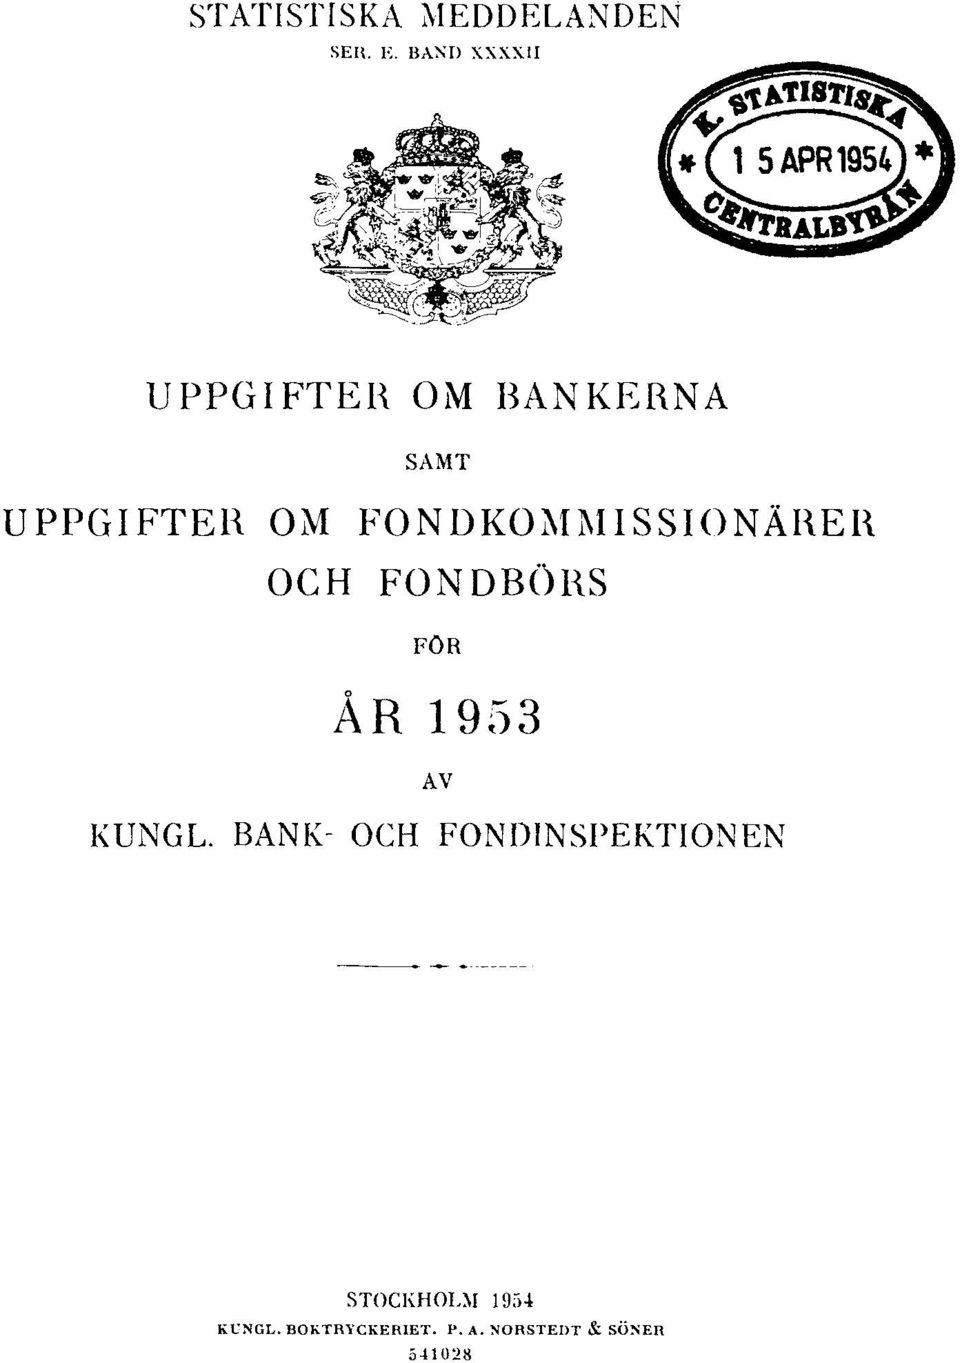 FONDKOMMISSIONÄRER OCH FONDBÖRS FÖR ÅR 1953 AV KUNGL.